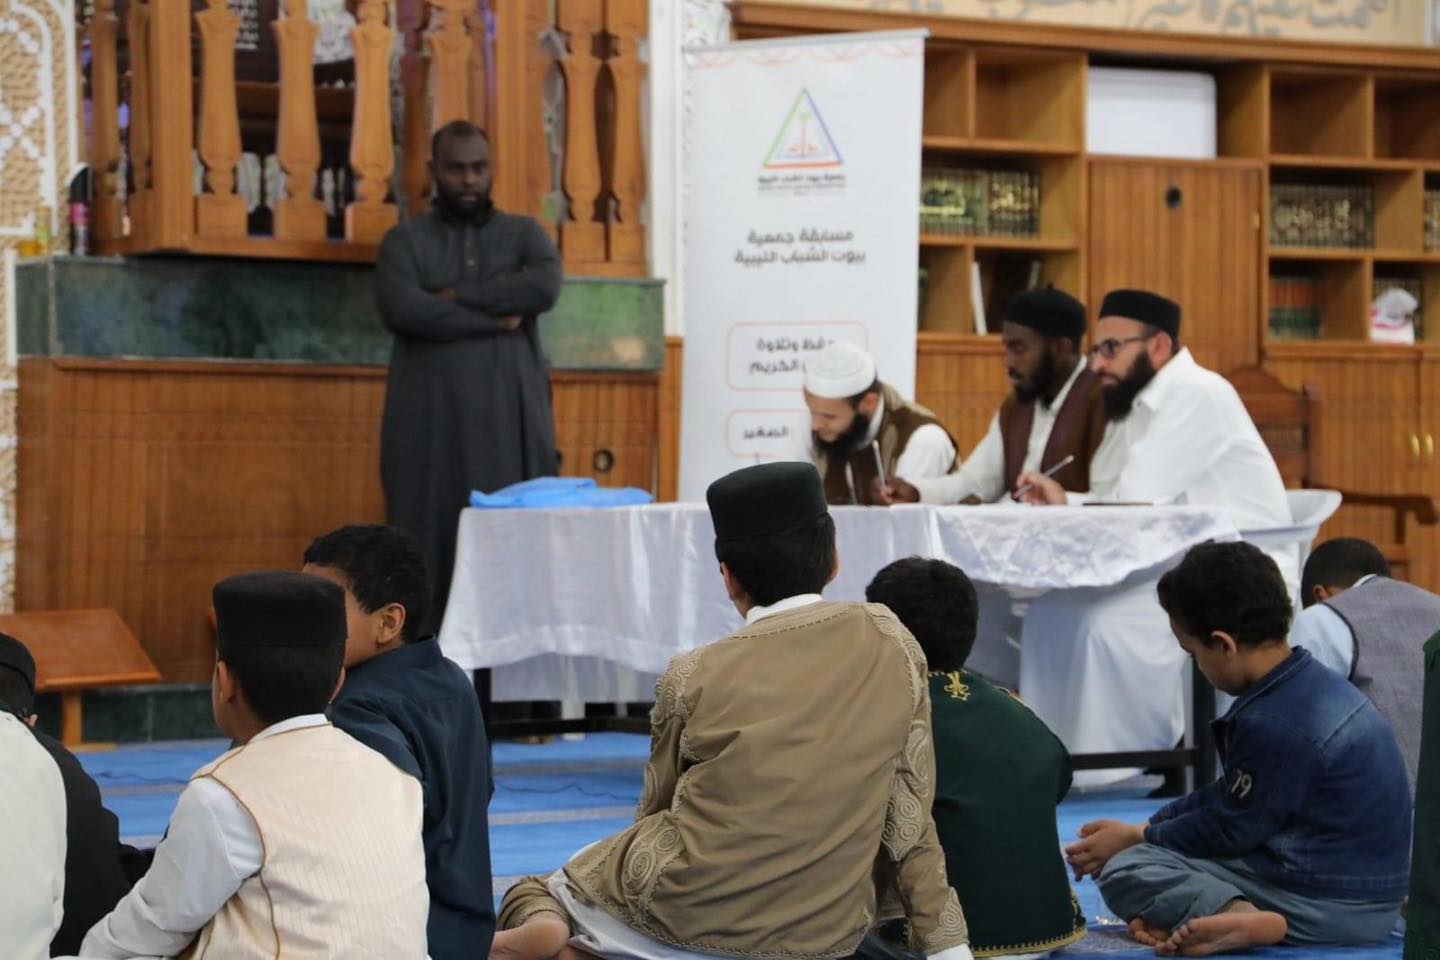 جمعيّة بيوت الشباب الليبية تستعد لتنظيم المسابقة الرابعة لحفظ القرآن الكريم  على مستوى ليبيا  .